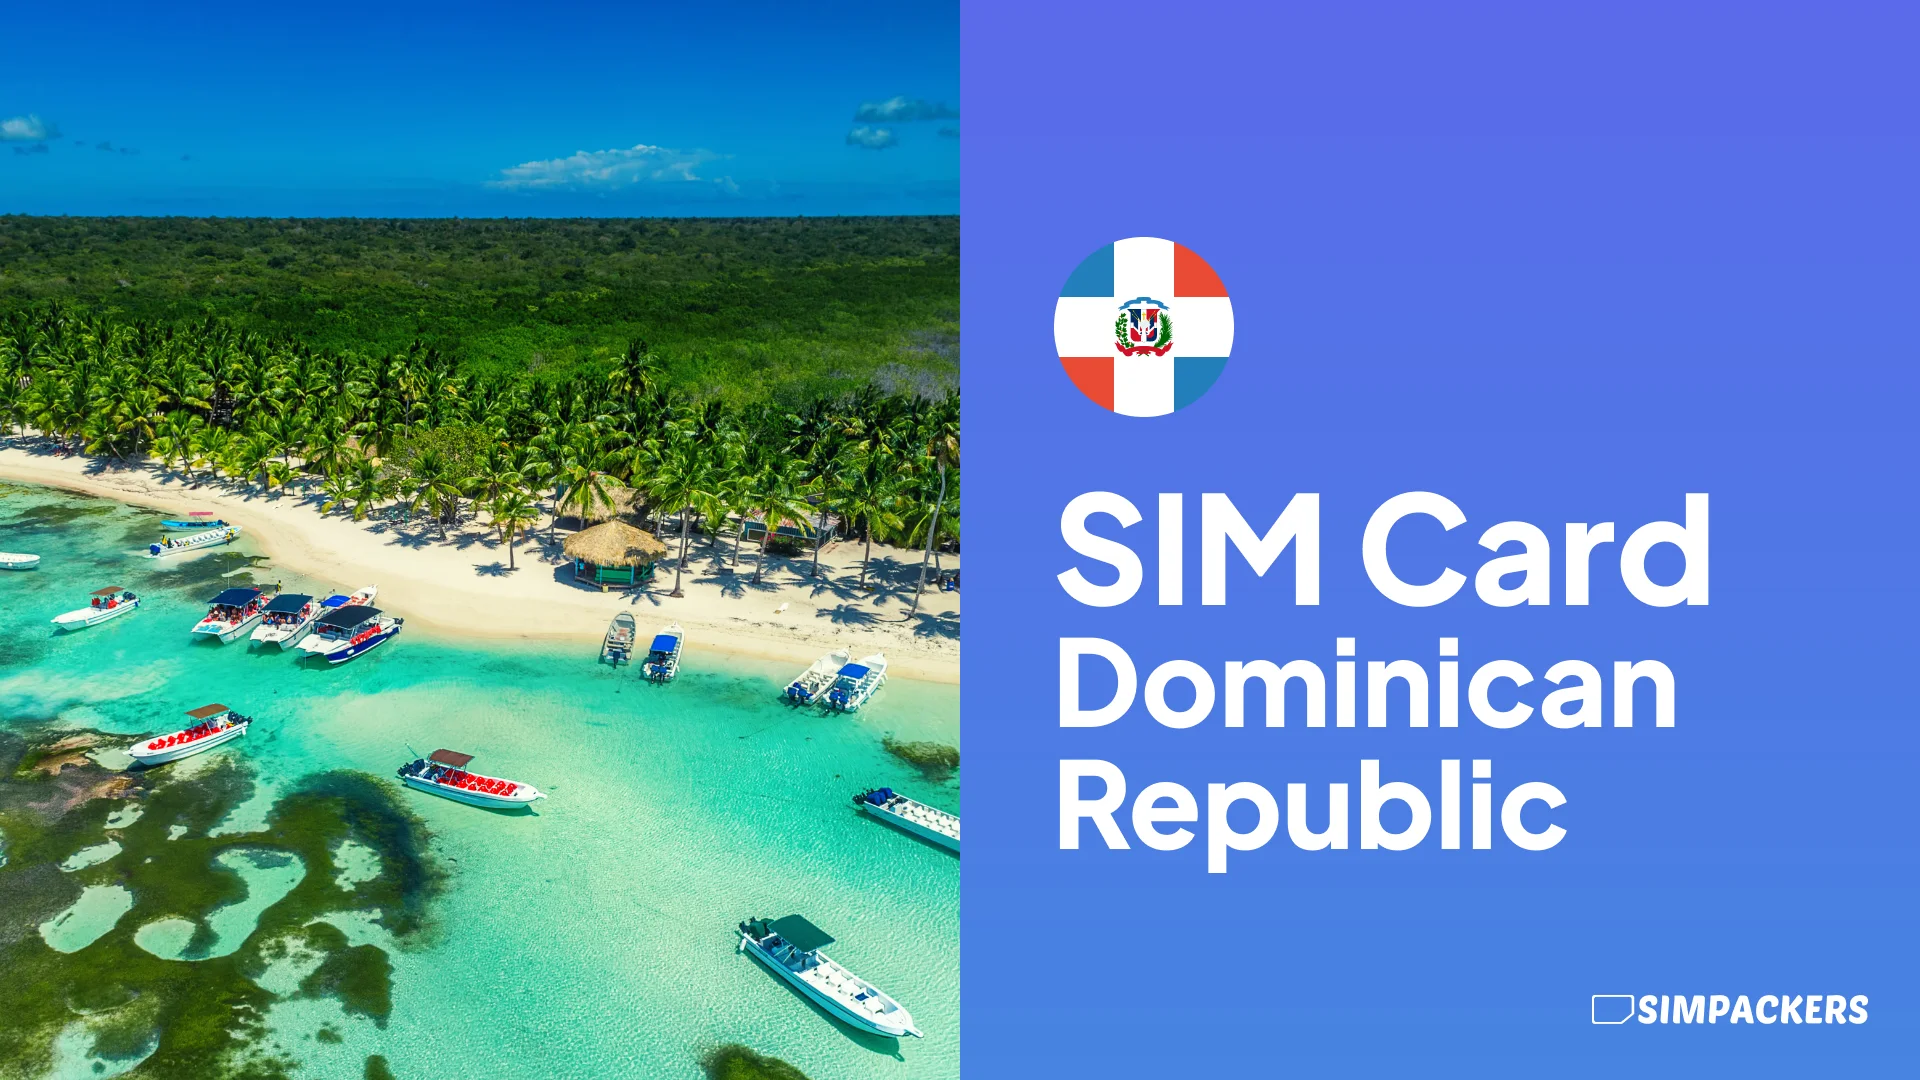 EN/FEATURED_IMAGES/sim-card-dominican-republic.webp